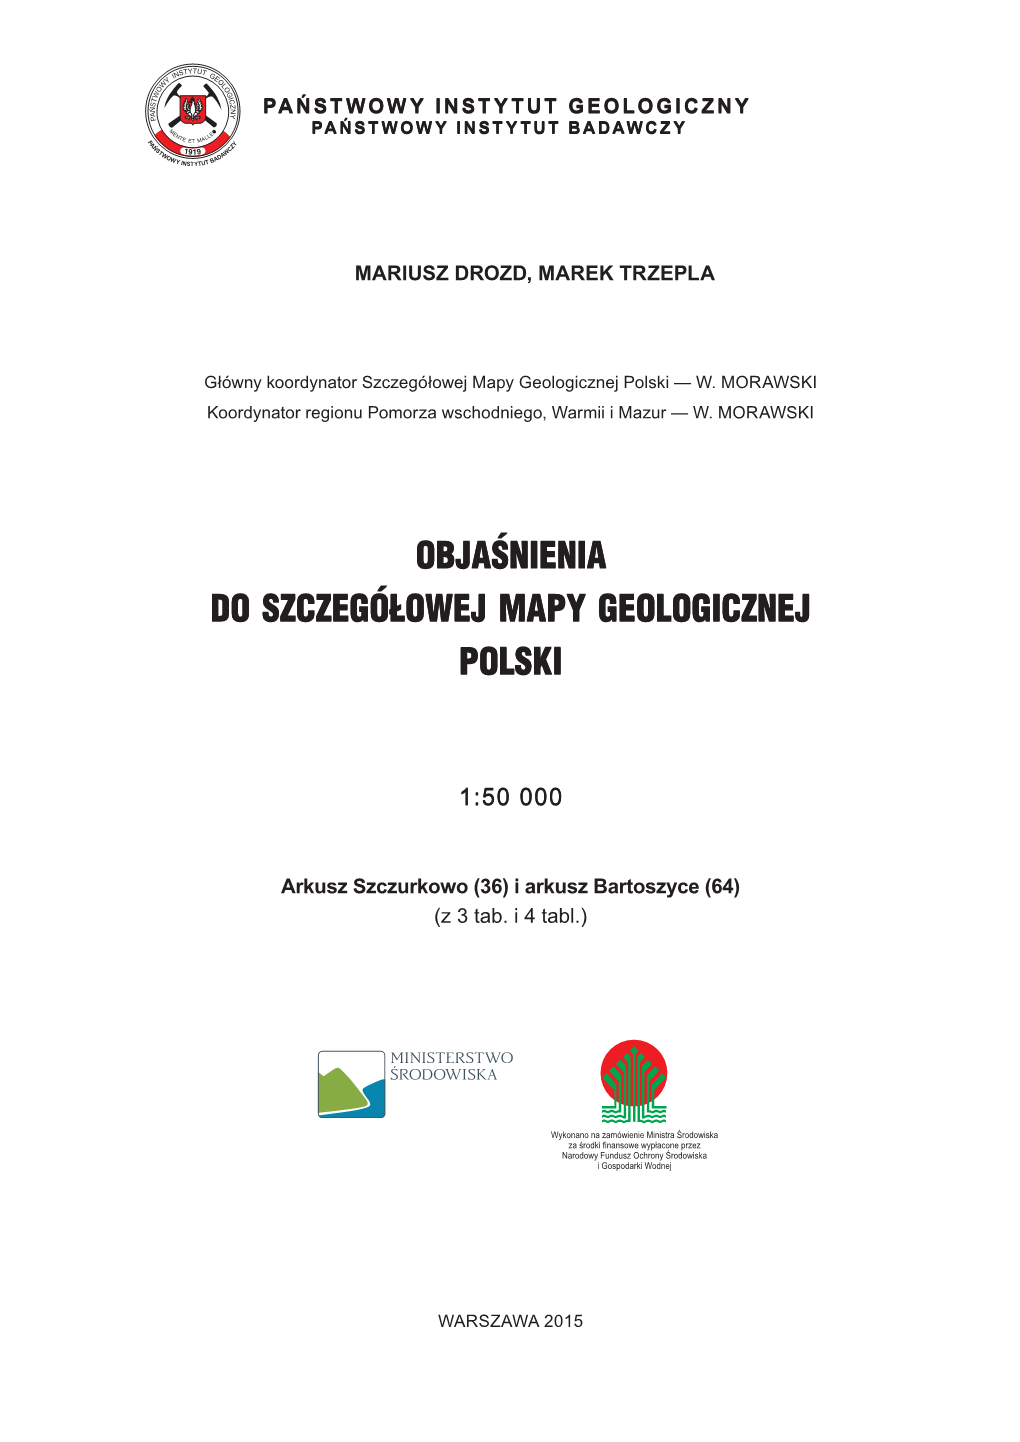 Szczegółowa Mapa Geologiczna Polski 1:50 000, Arkusze Szczurkowo (36) I Bartoszyce (64) 2006–2009 R